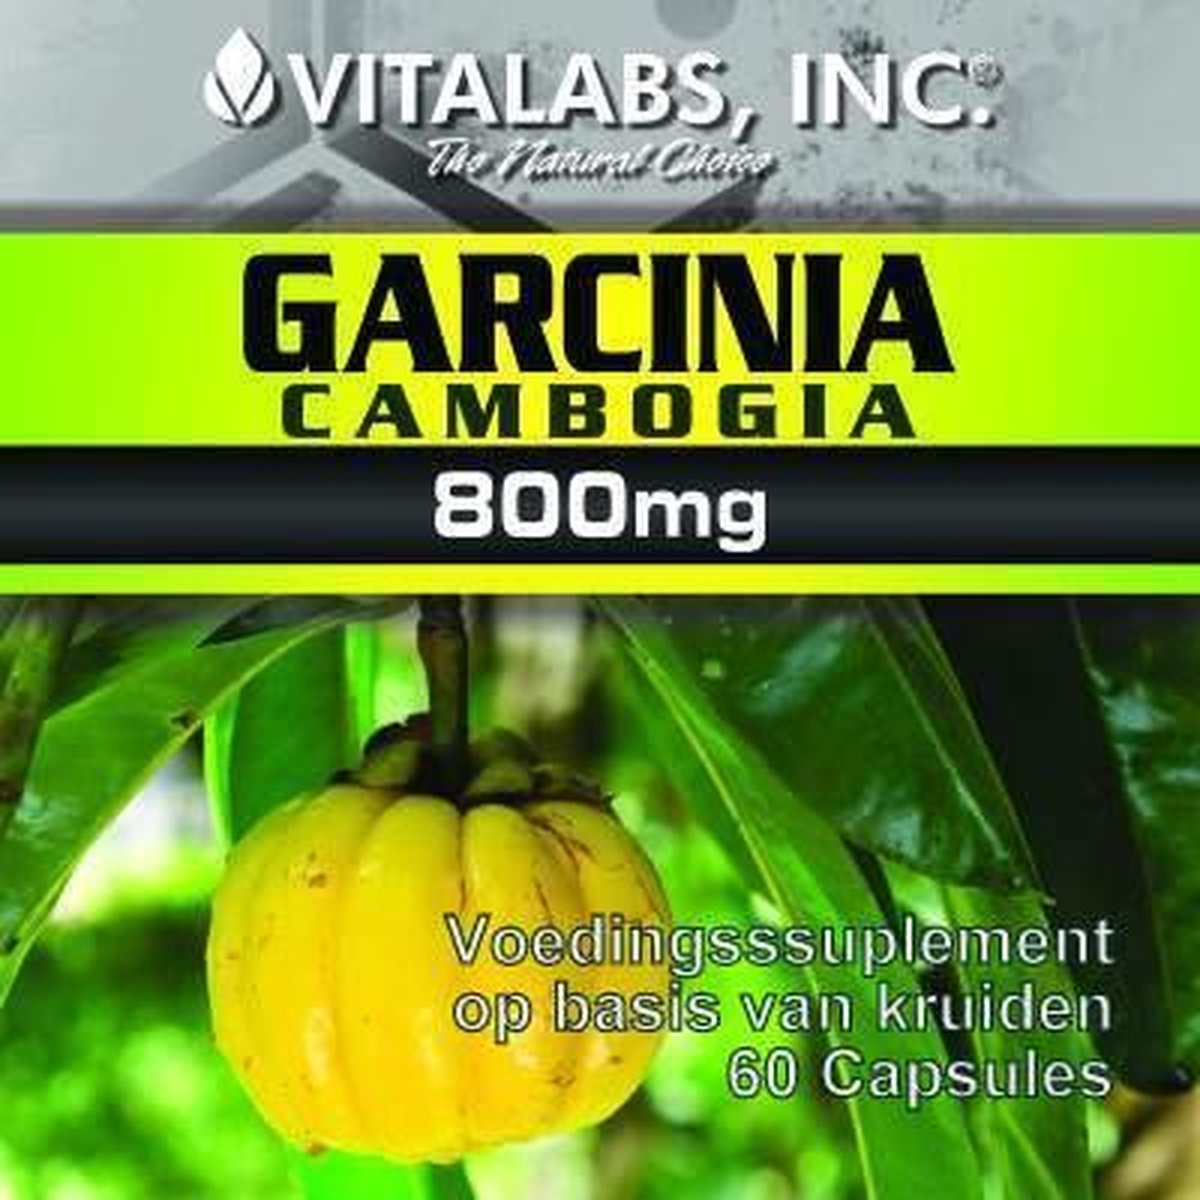 Afvallen met Garcinia Cambogia | Mens en Gezondheid: Dieet